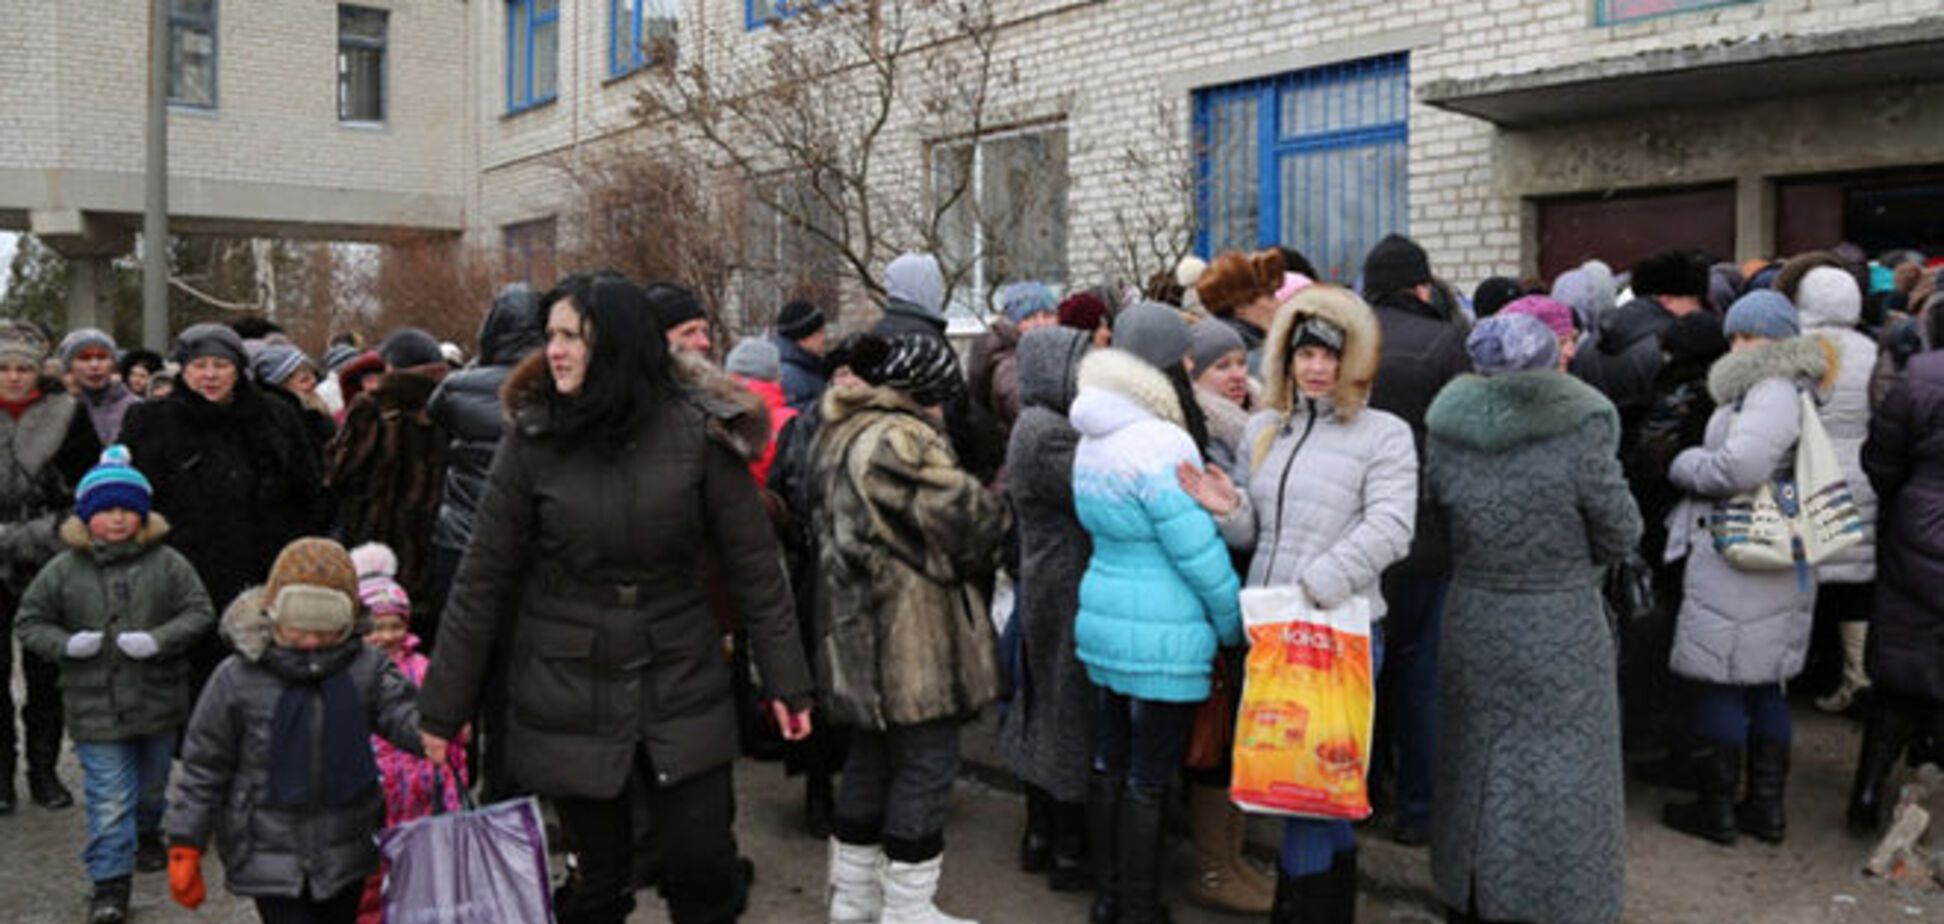 ООН доставила гумдопомогу 10 тисячам жителів Луганська